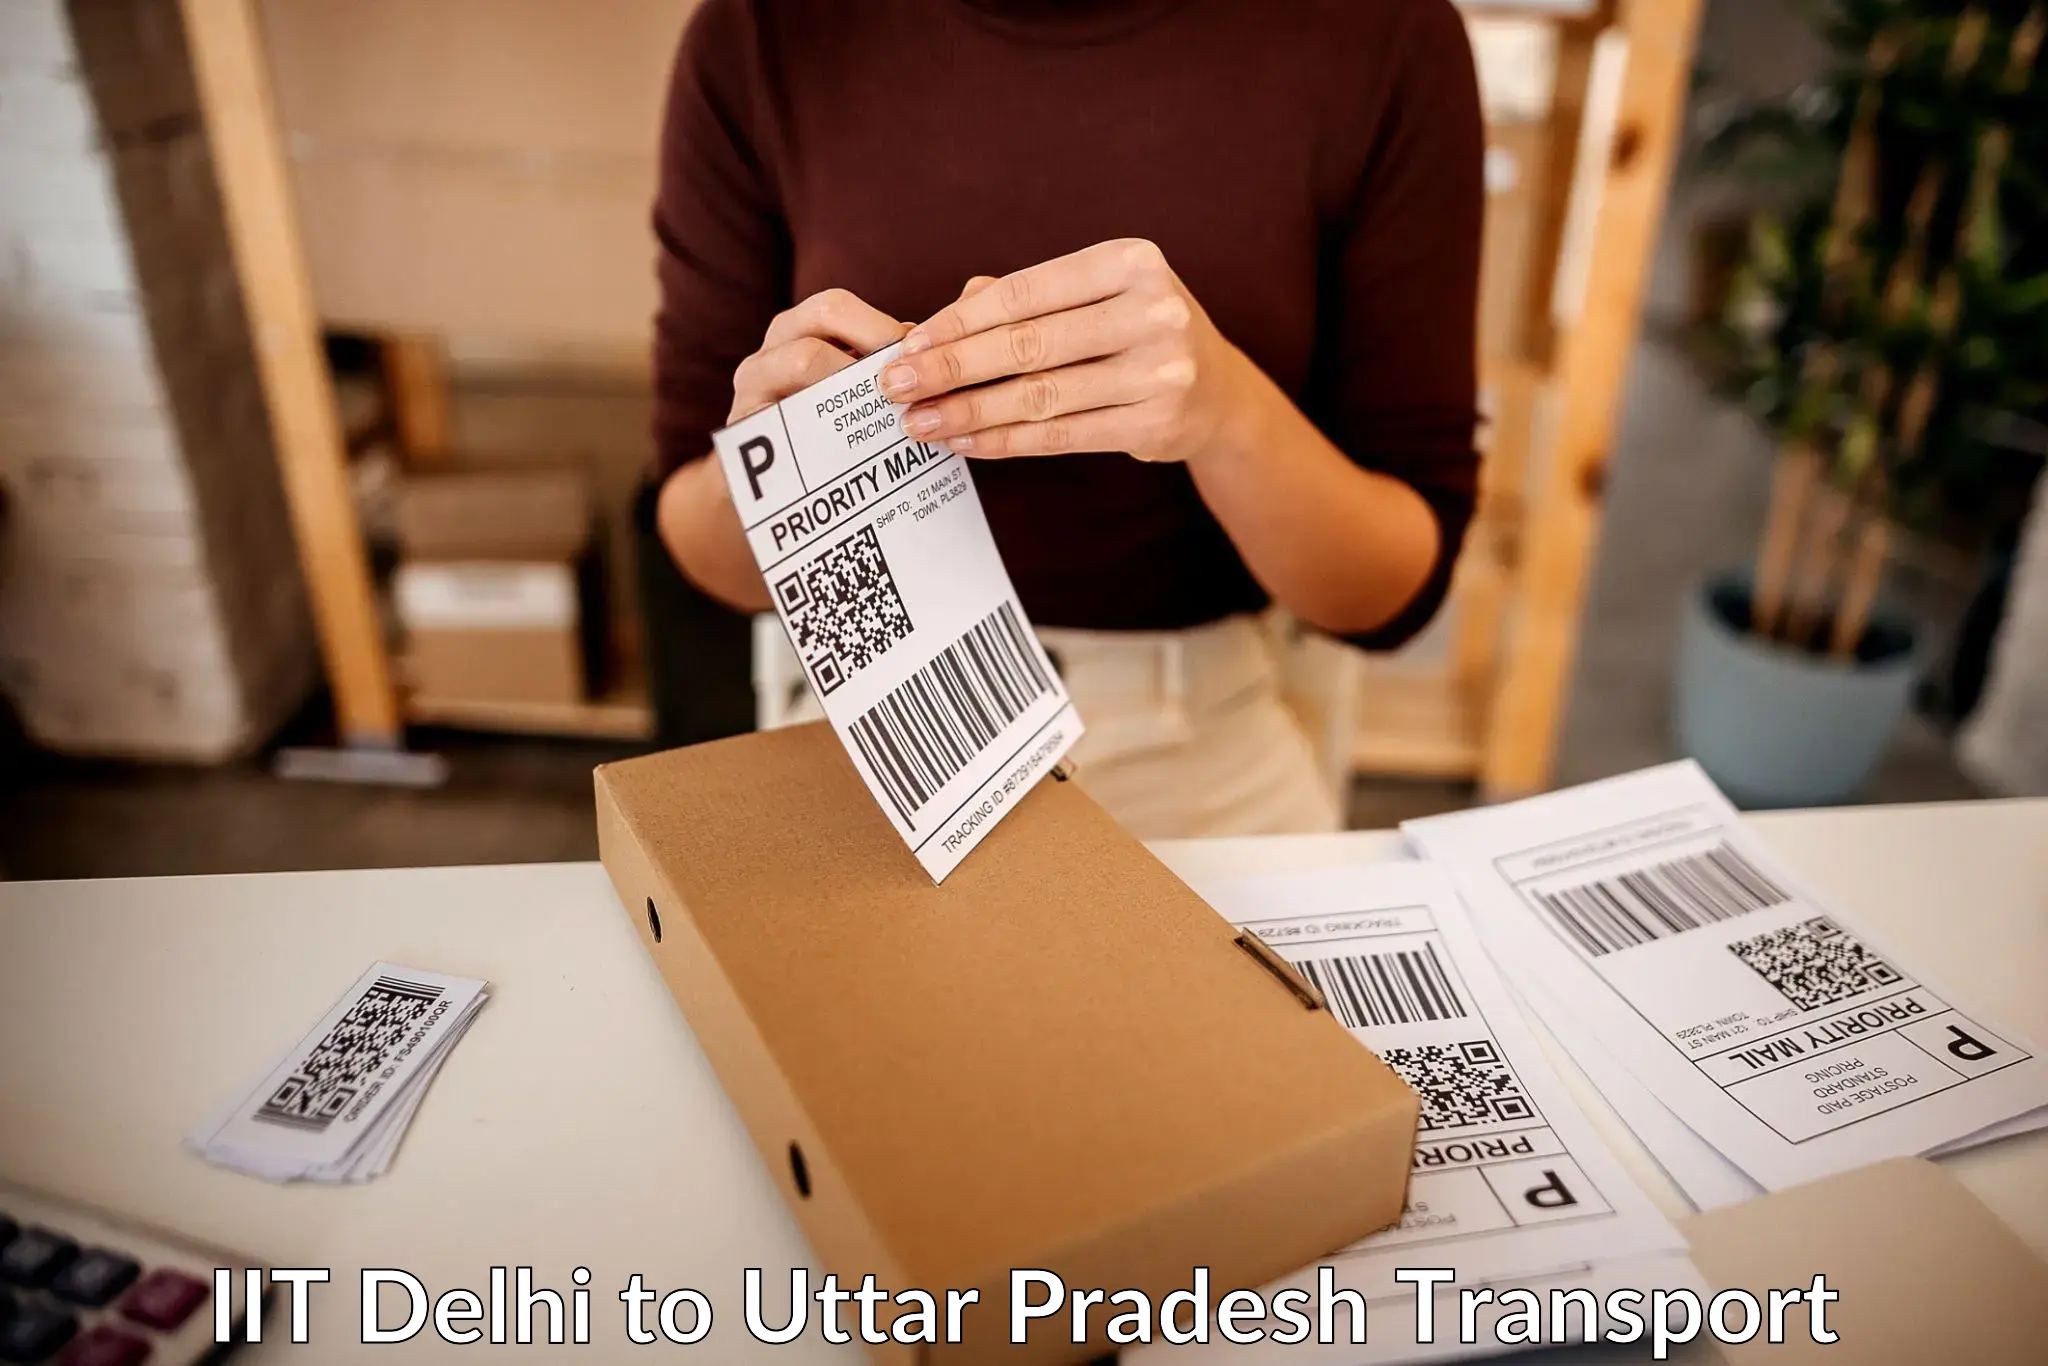 Online transport service IIT Delhi to Machhali Shahar